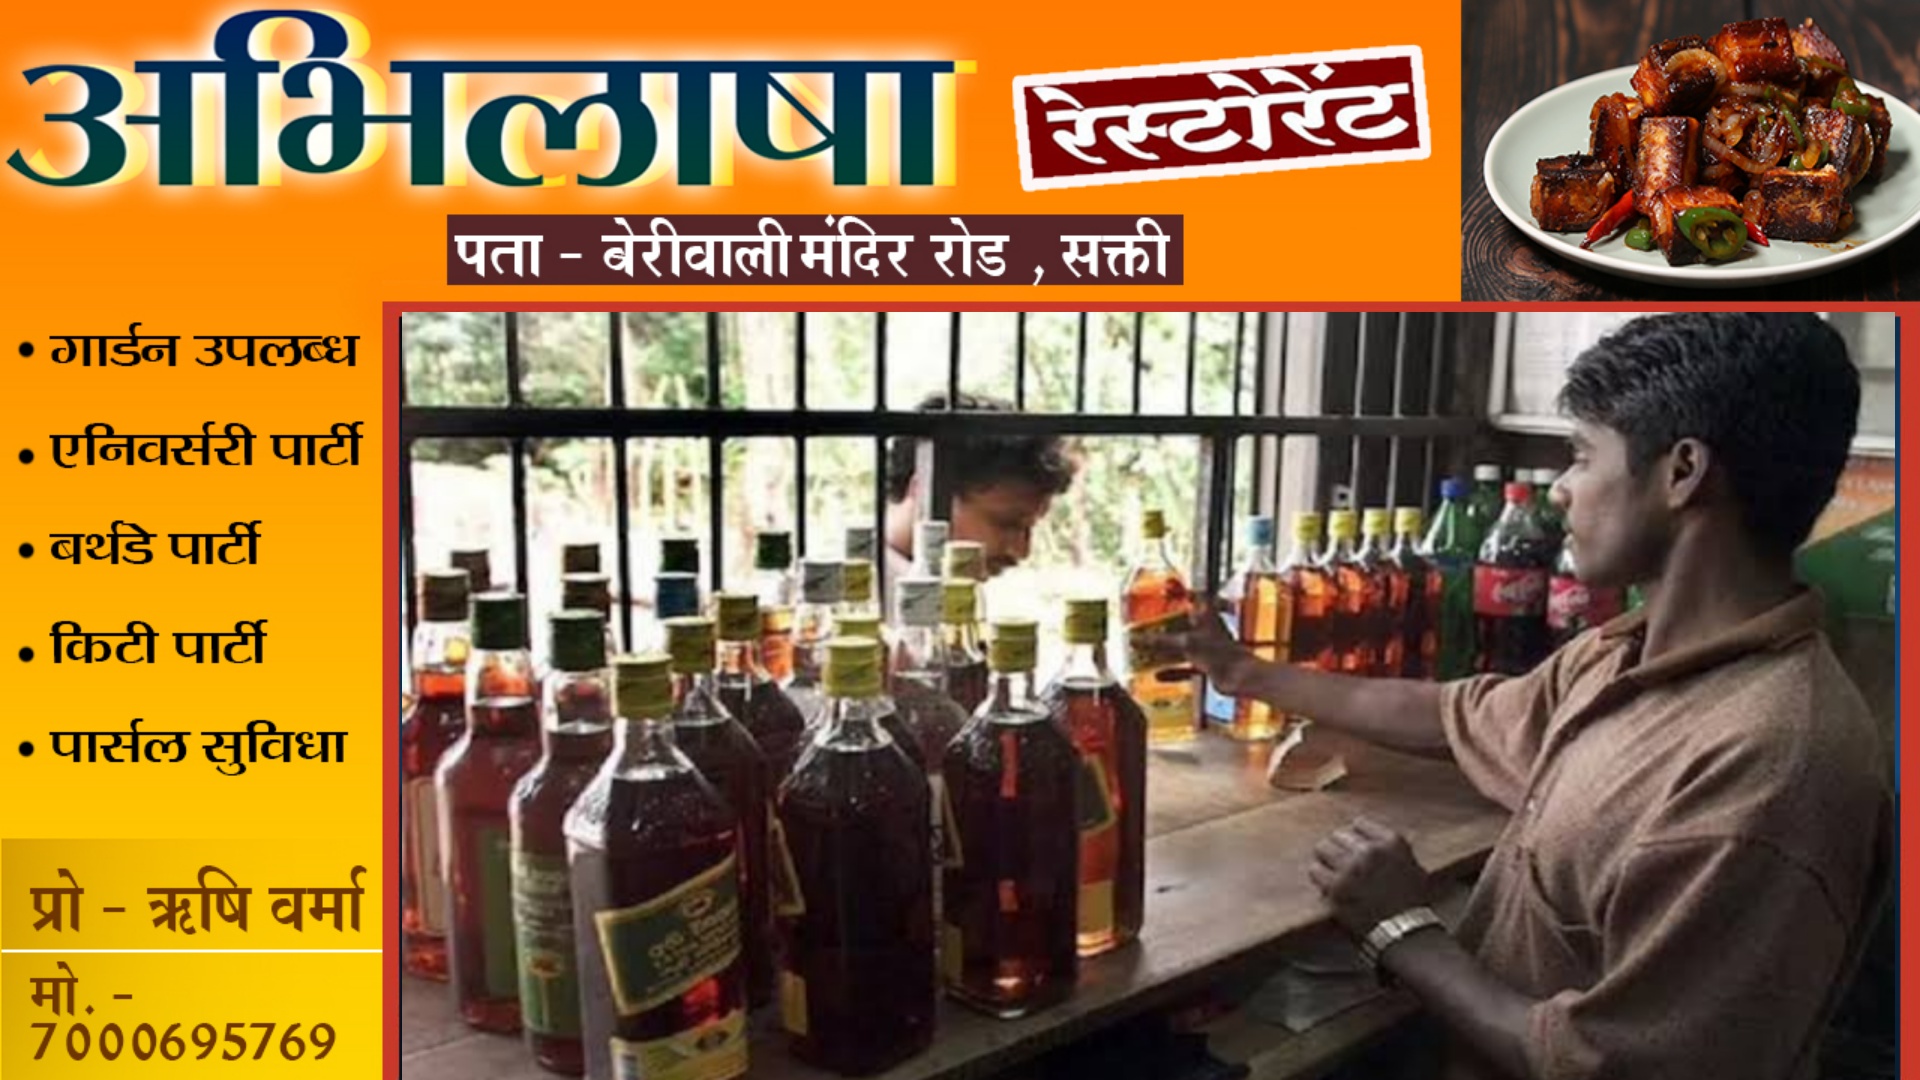 छत्तीसगढ़ - शराब प्रेमियों को बड़ा झटका , जिले के सभी शराब दुकानों को बंद करने का आदेश जारी